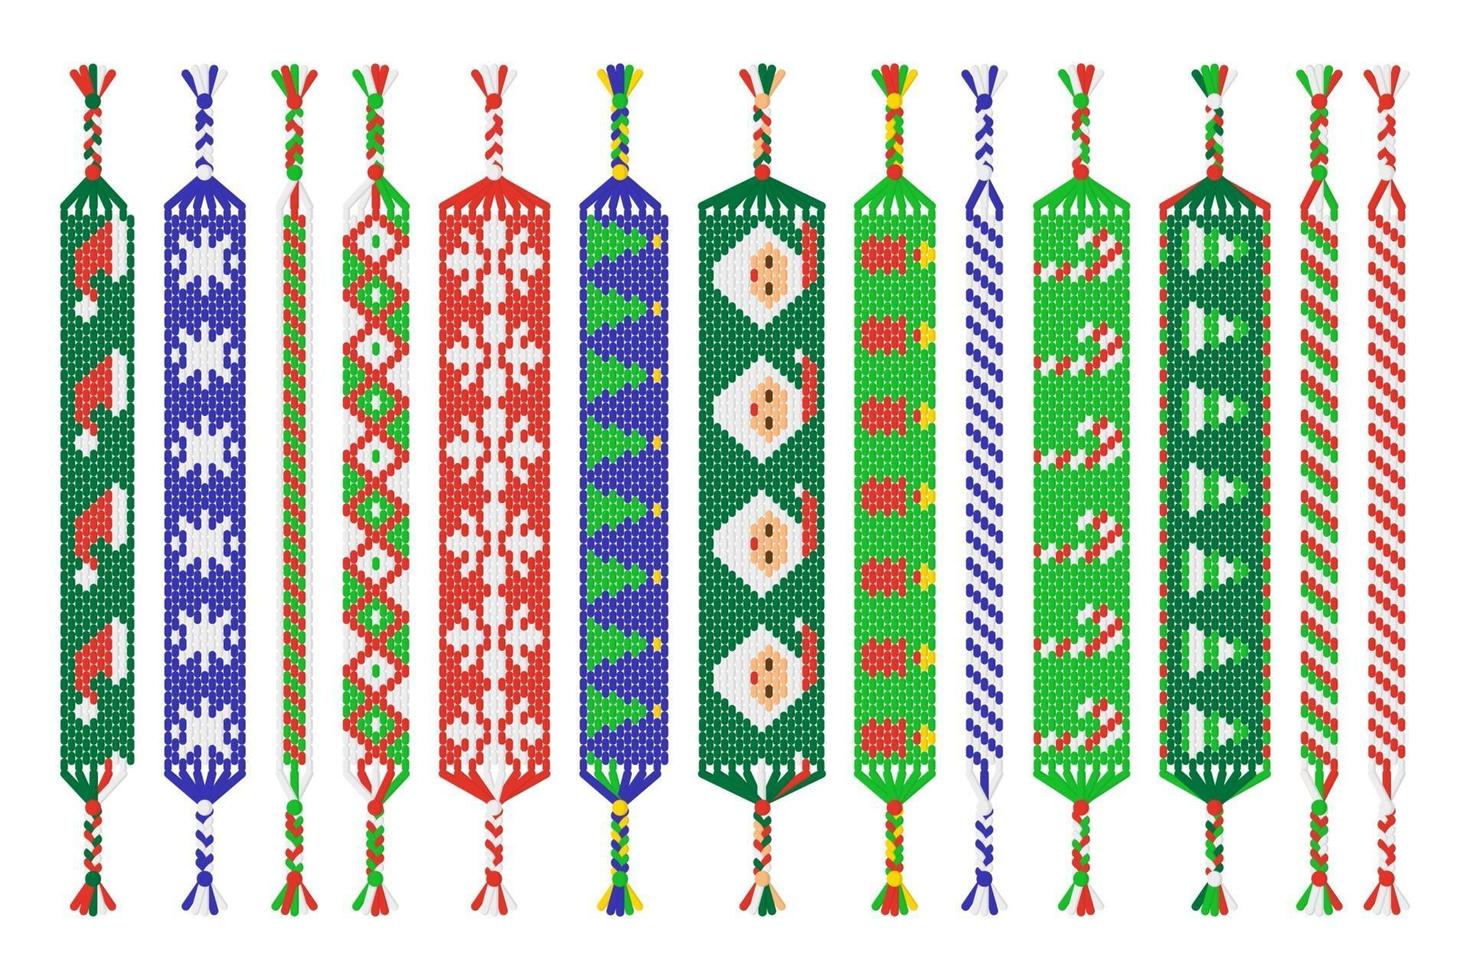 Vektorsatz von handgemachten Freundschaftsbändern von Fäden lokalisiert auf weißem Hintergrund. Frohe Weihnachten und ein glückliches Neues Jahr vektor